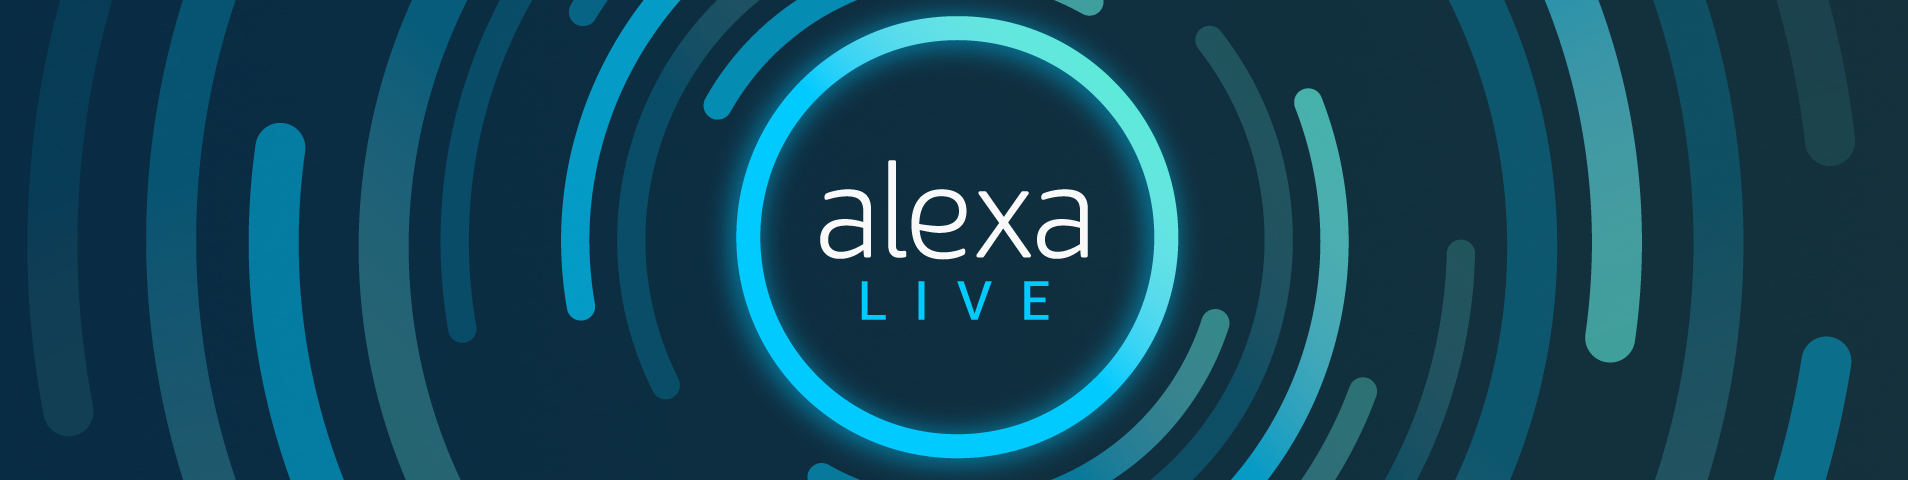 Alexa Live notes